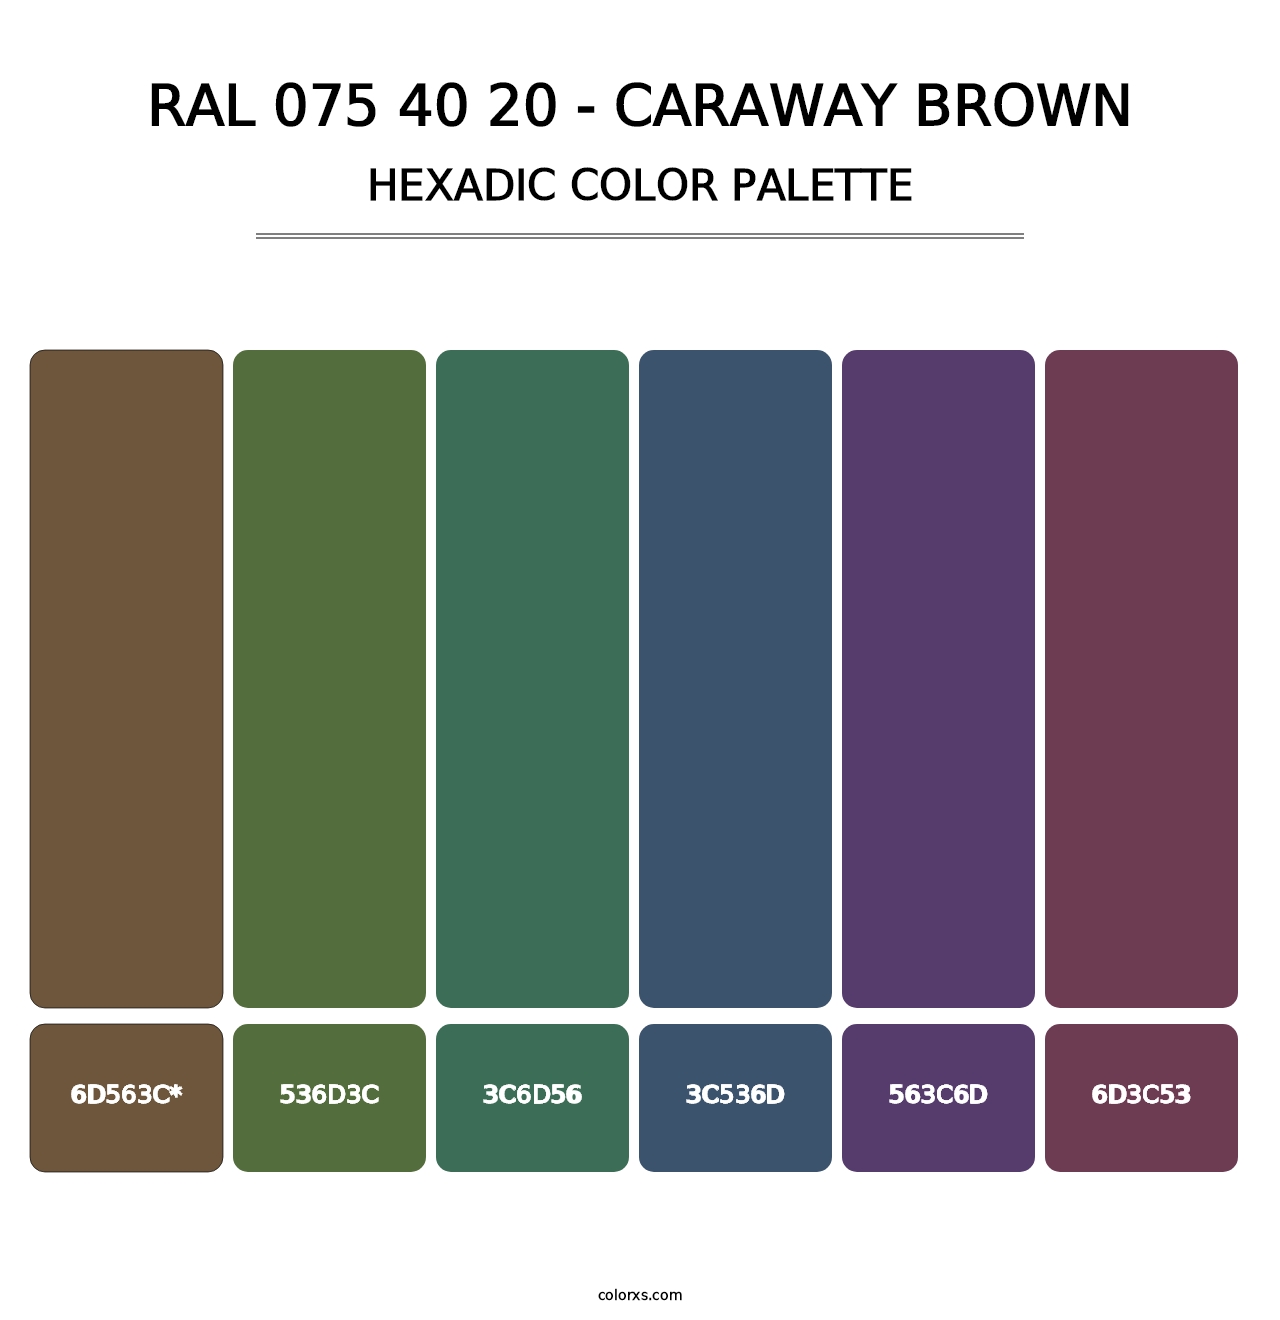 RAL 075 40 20 - Caraway Brown - Hexadic Color Palette